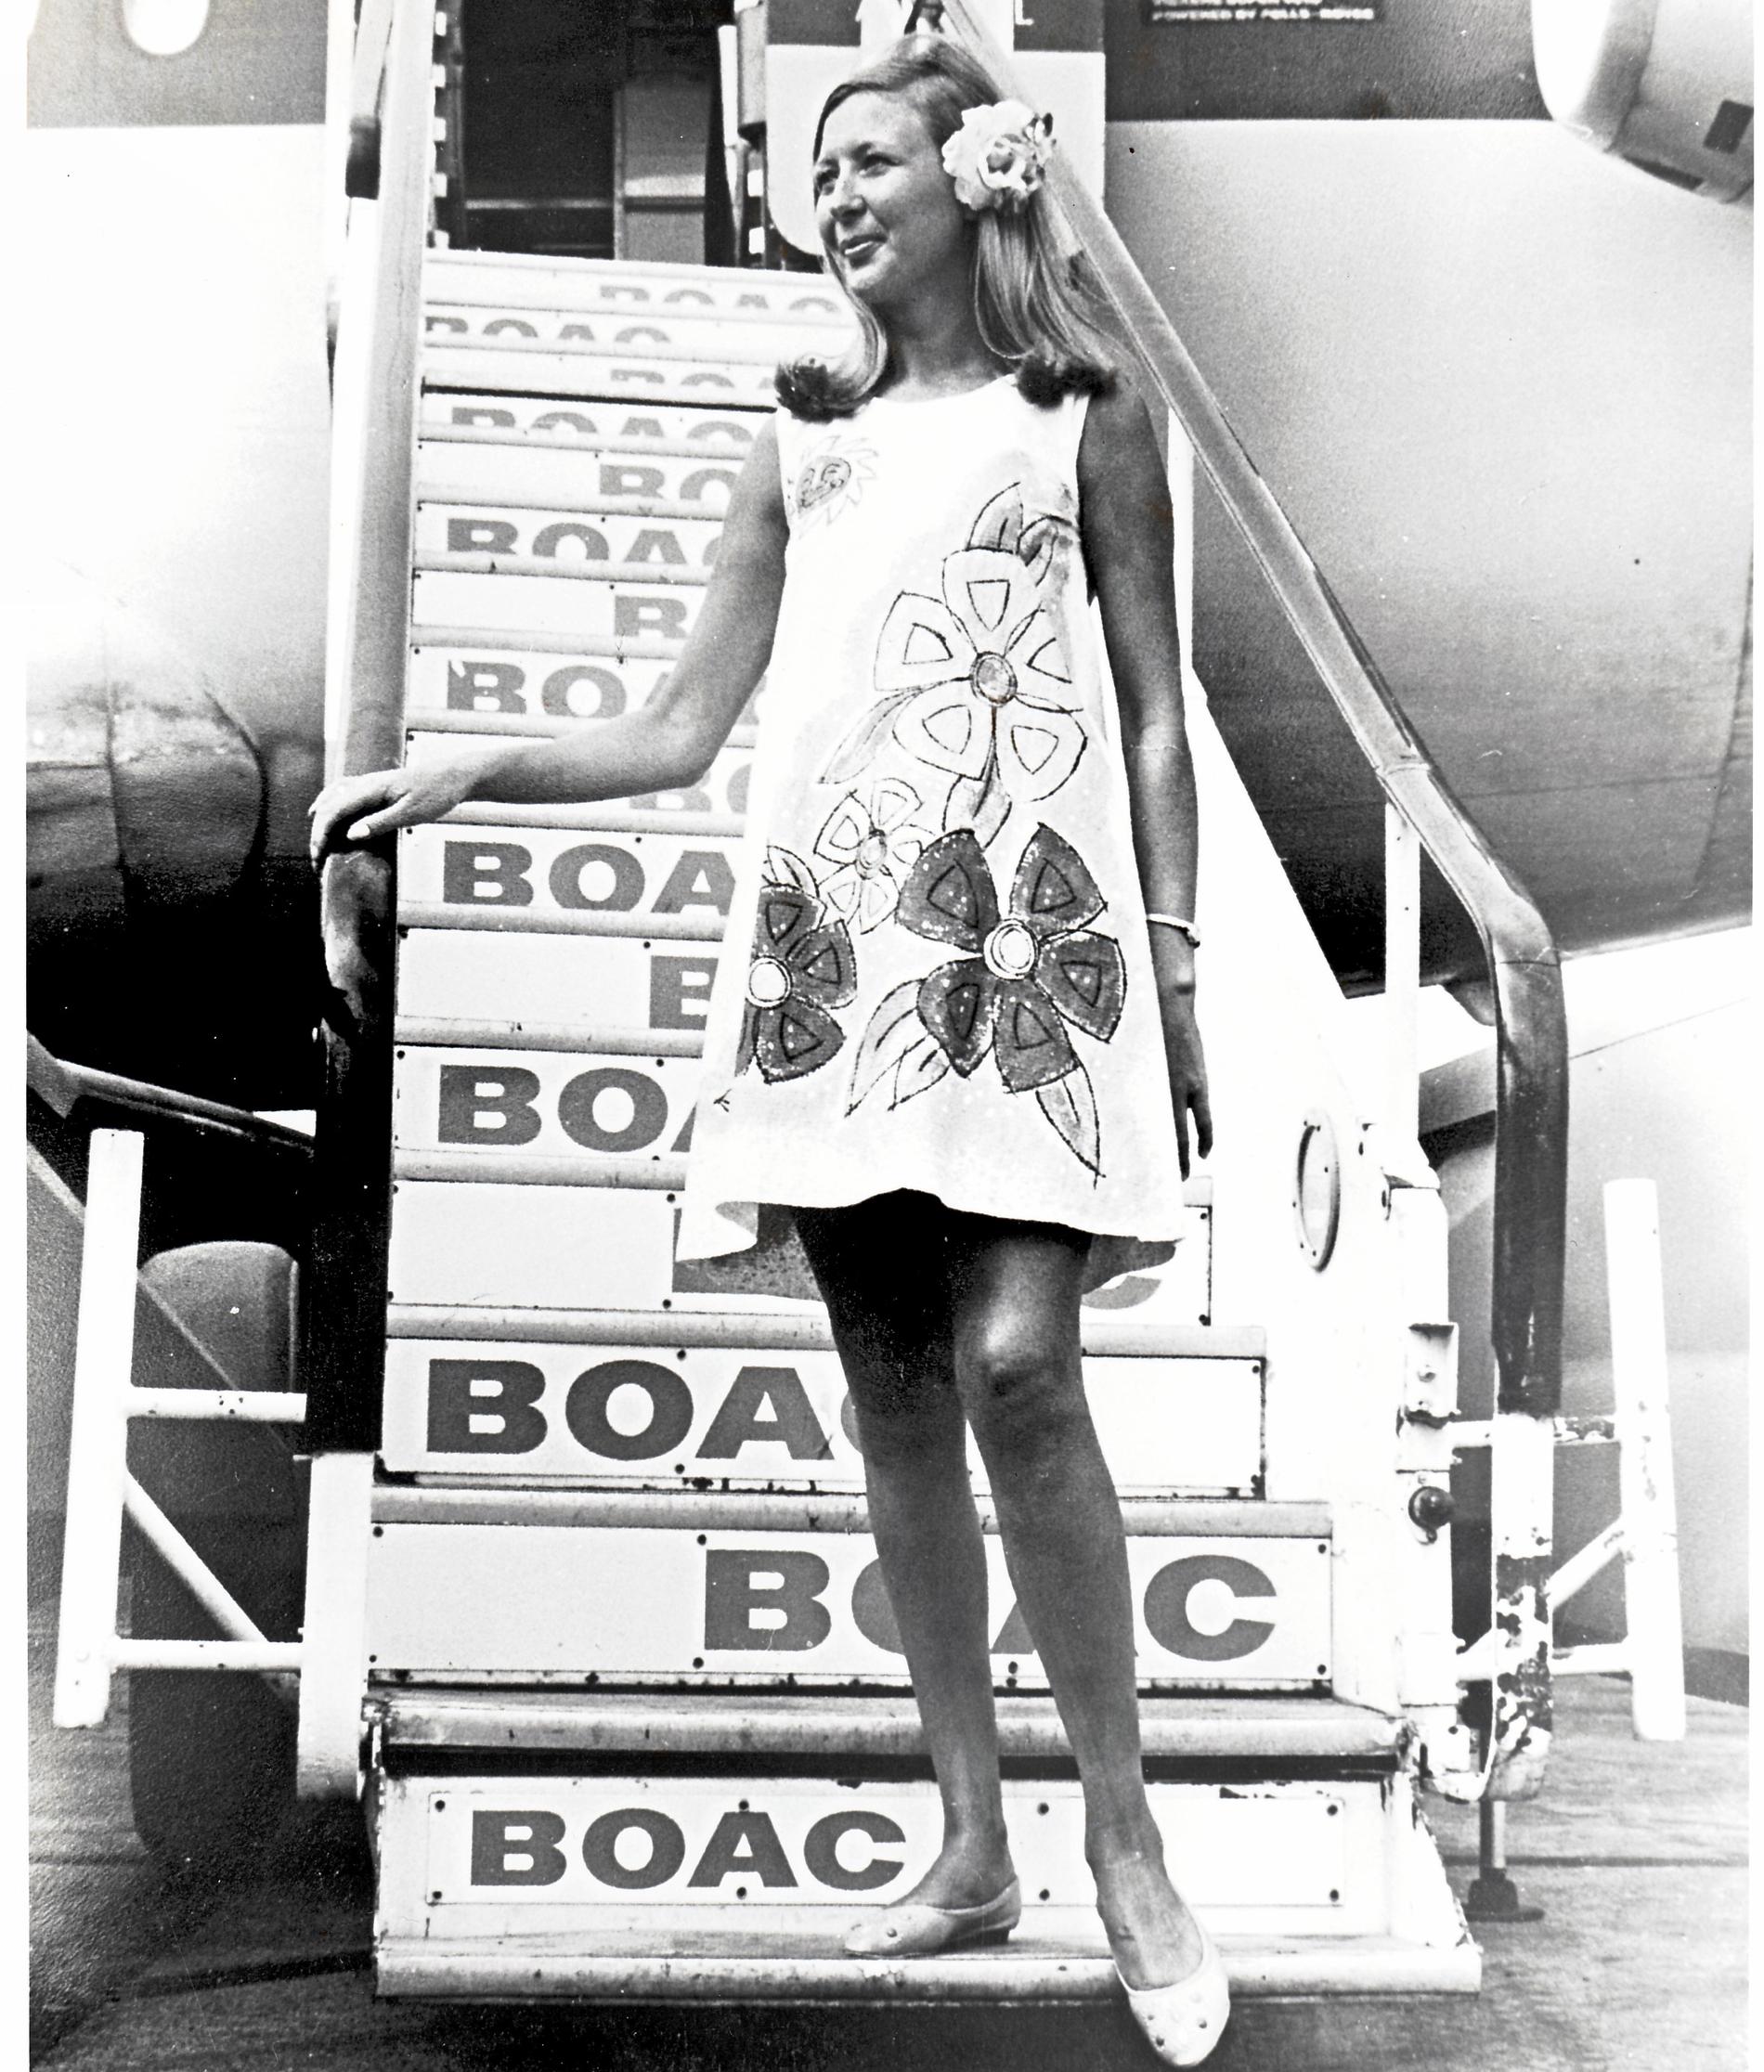 1967 introducerades denna ”Paper dress” som skulle spegla tidsandan och dess ”flower power”. Denna uniform användes endast på flygningar mellan New York och Karibien.